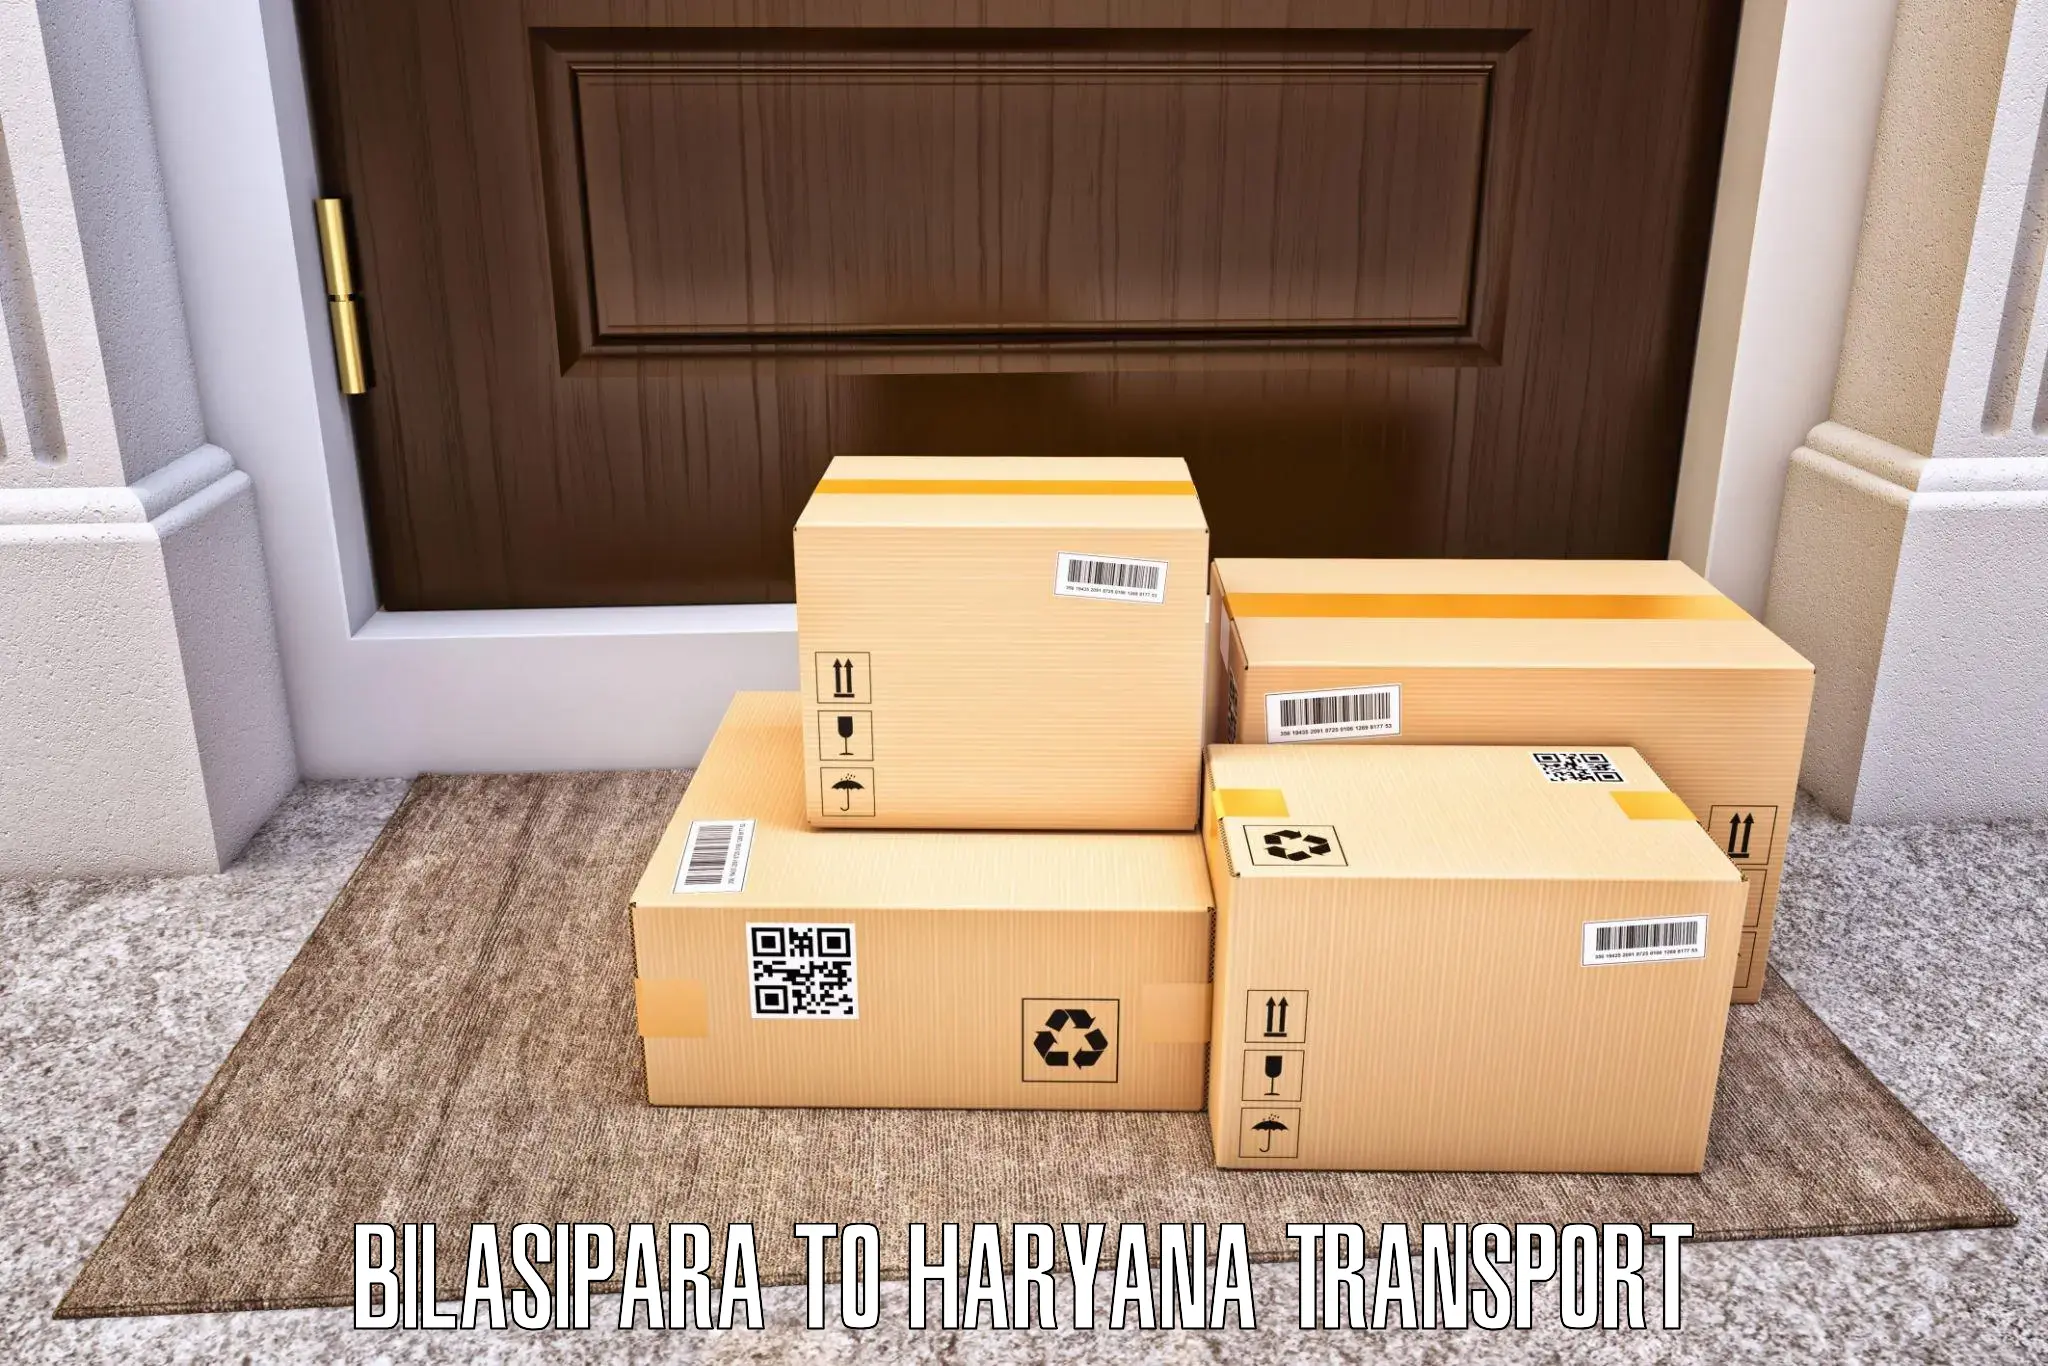 Online transport booking Bilasipara to Taraori